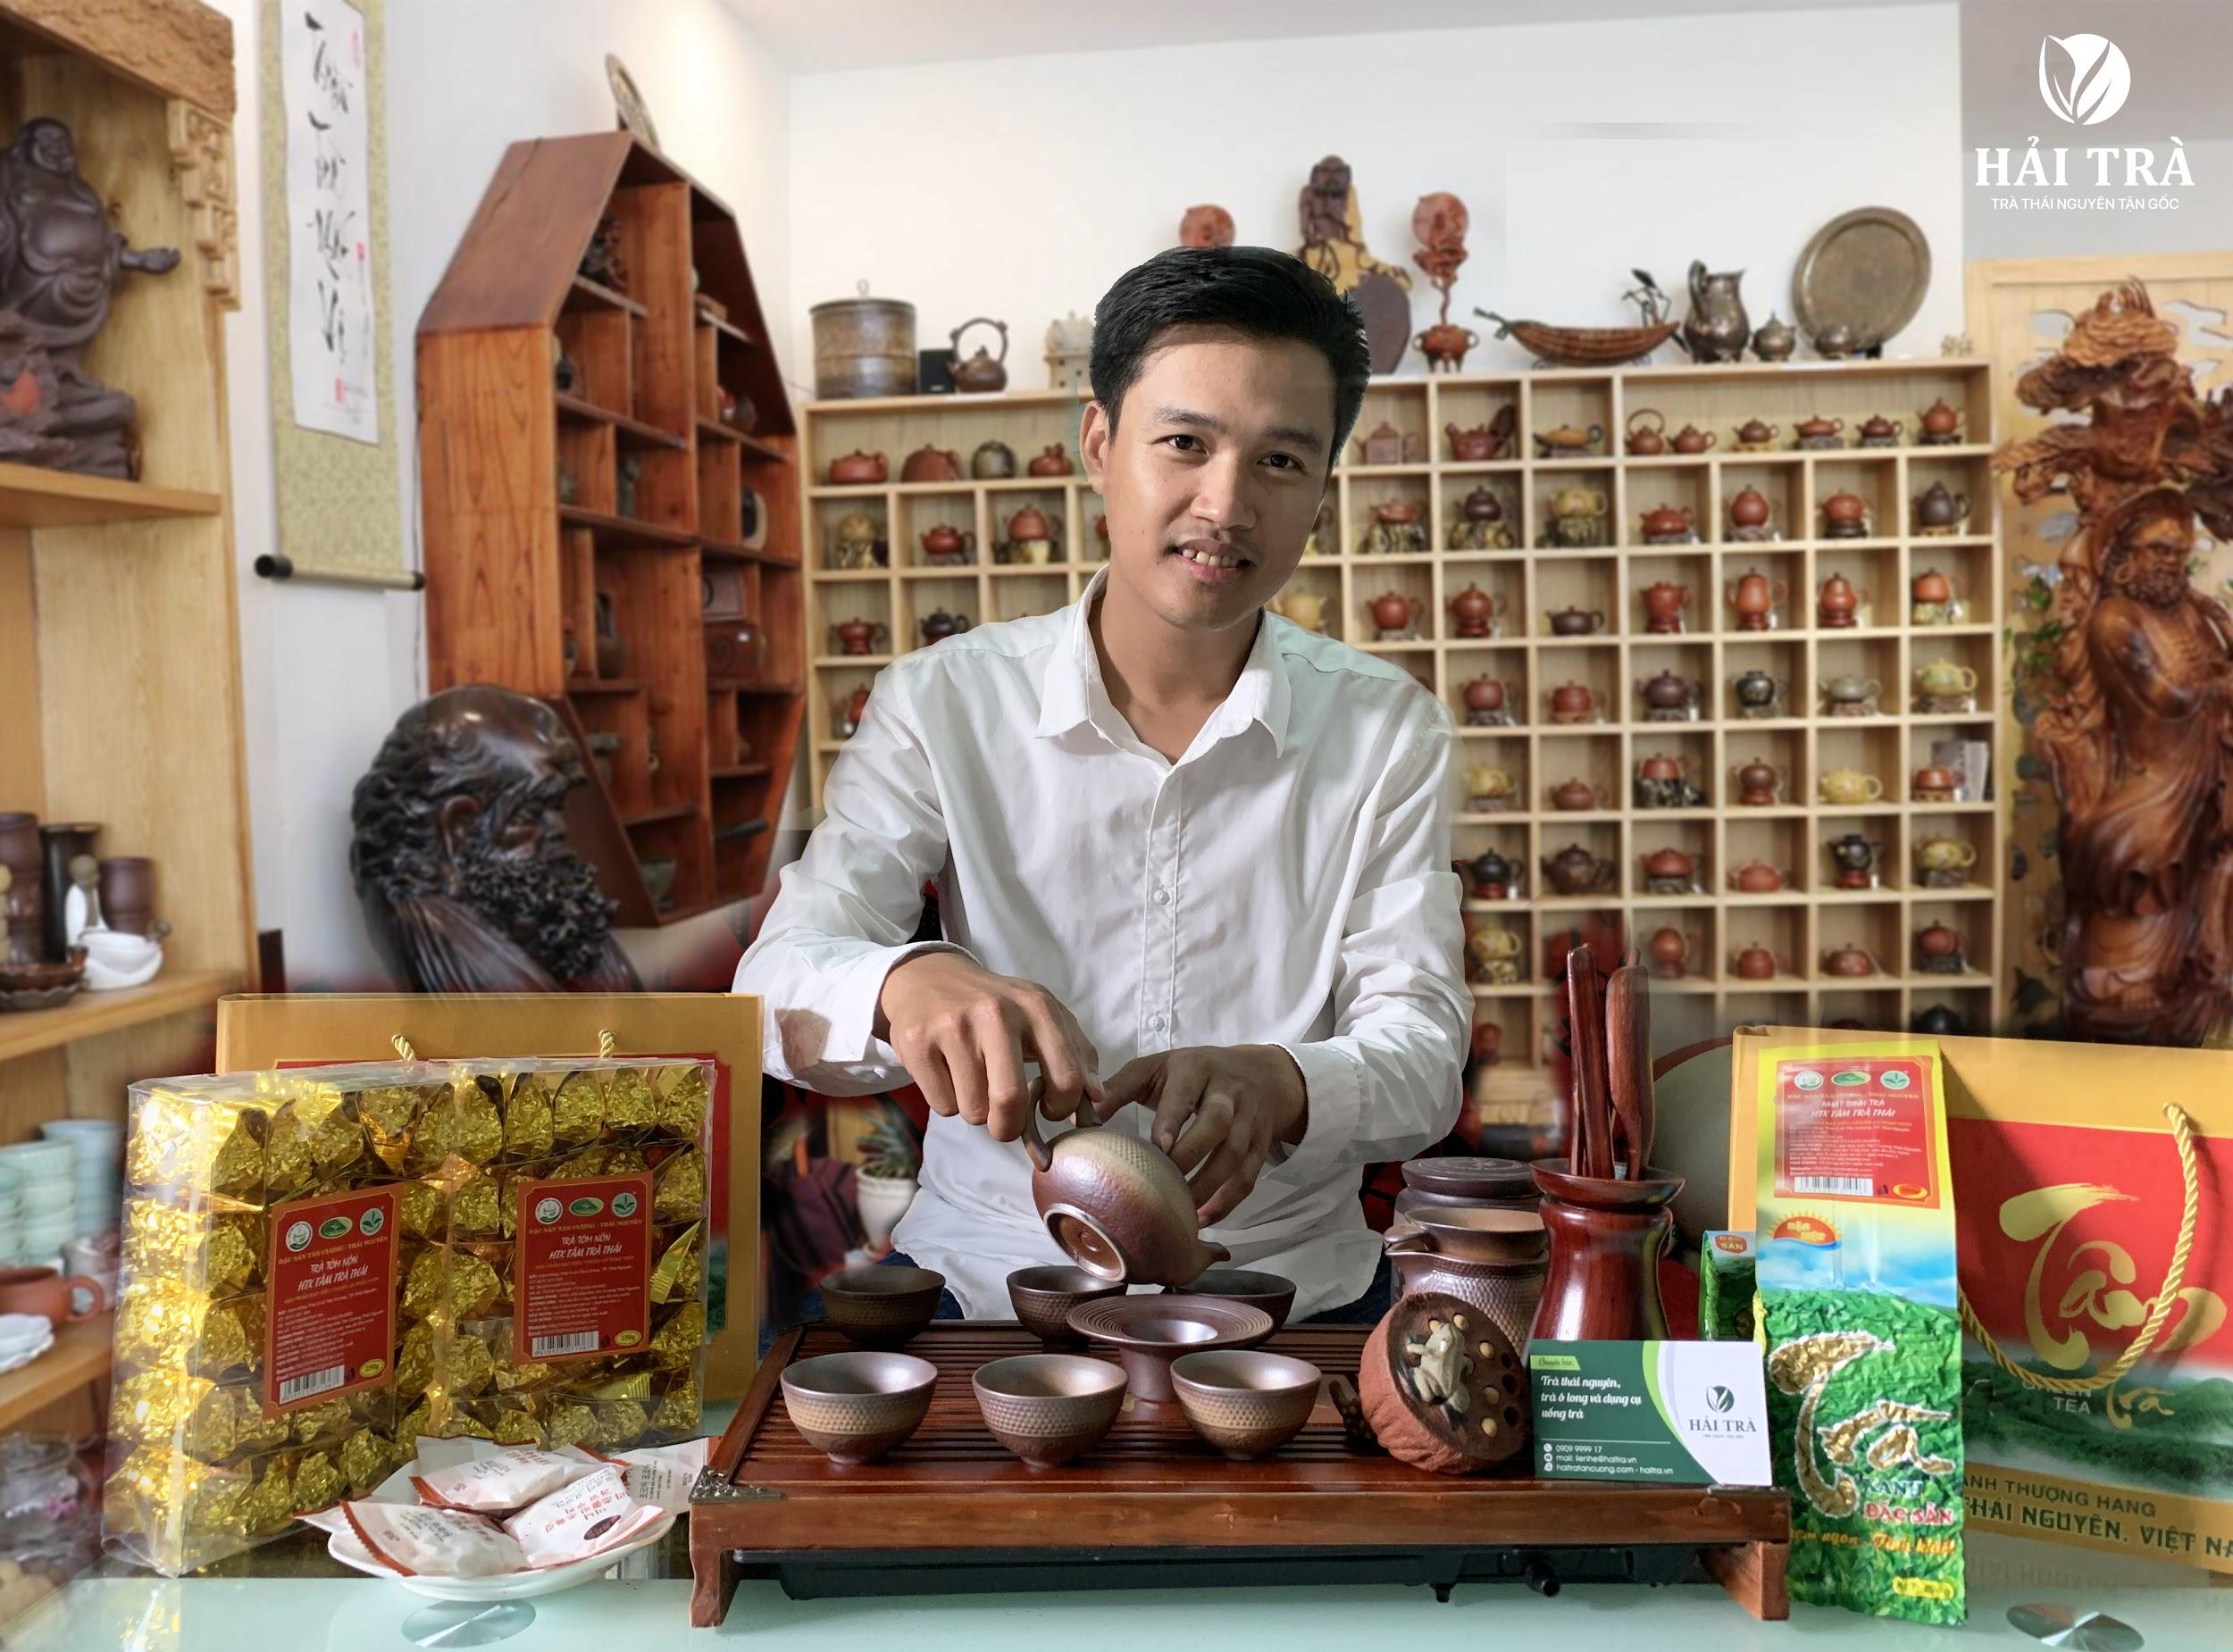 Hải Trà Tân Cương - Địa chỉ bán trà Thái Nguyên online uy tín - 1